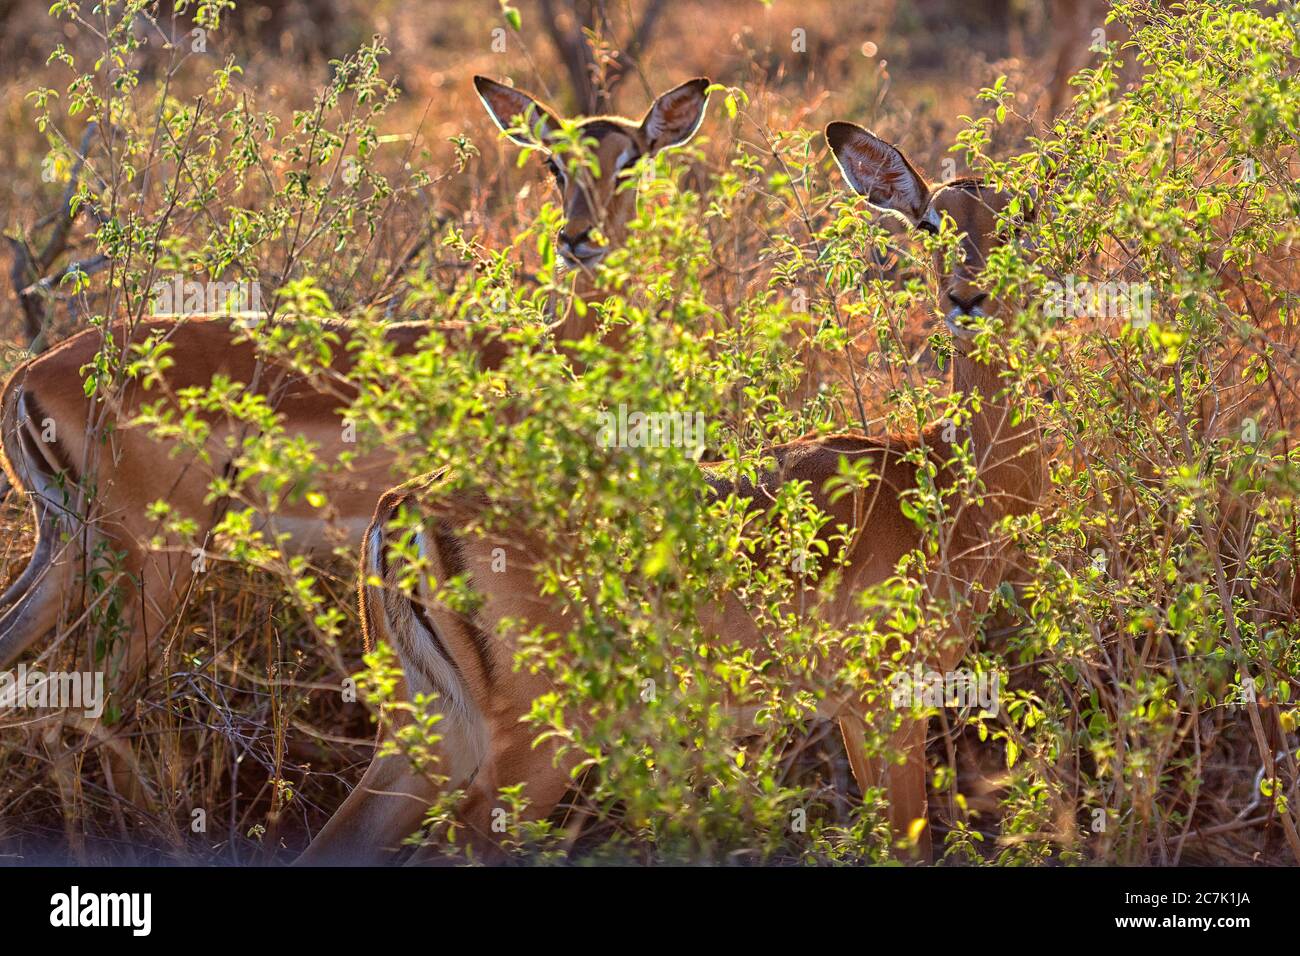 Impala kämpft. Krüger Nationalpark, Südafrika. Die Impala (Aepyceros melampus) ist eine mittelgroße, anmutige Antilope mit langem Hals und langen Beinen. Sie sind nicht eng mit anderen Antilopenarten verwandt. Sie sind entlang der östlichen bis südöstlichen Regionen Afrikas zu finden, manchmal in großer Zahl. Ihre Lebensräume sind Wald- und Grünlandränder innerhalb weniger Kilometer Wasser. In Anwesenheit sind Redenbargel Oxpeckers (Buphagus erythrorhynchus). Stockfoto